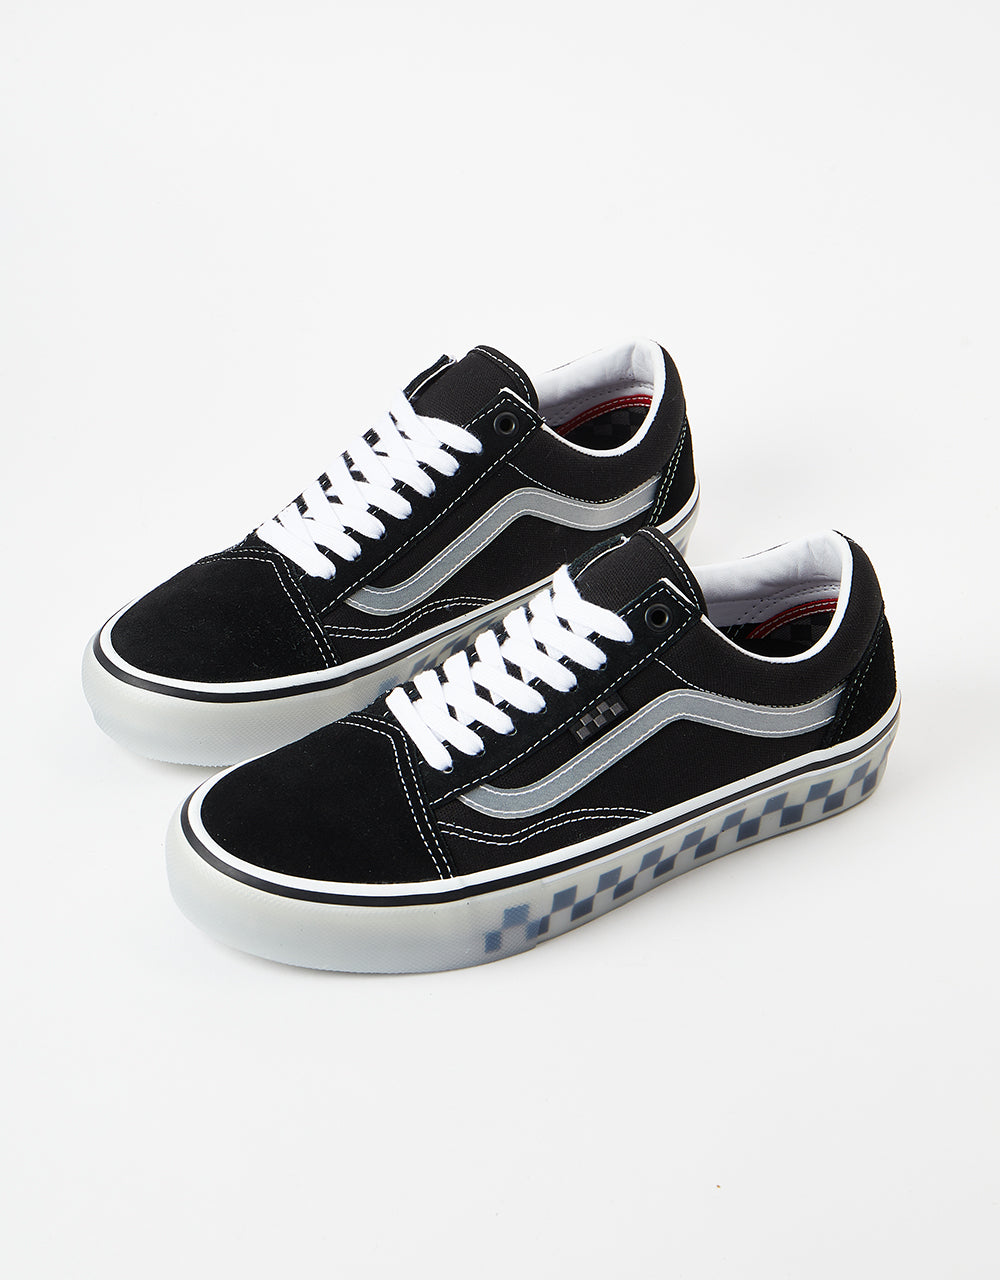 Vans Skate Old Skool Shoes - (Translucent Rubber) Black/Clear